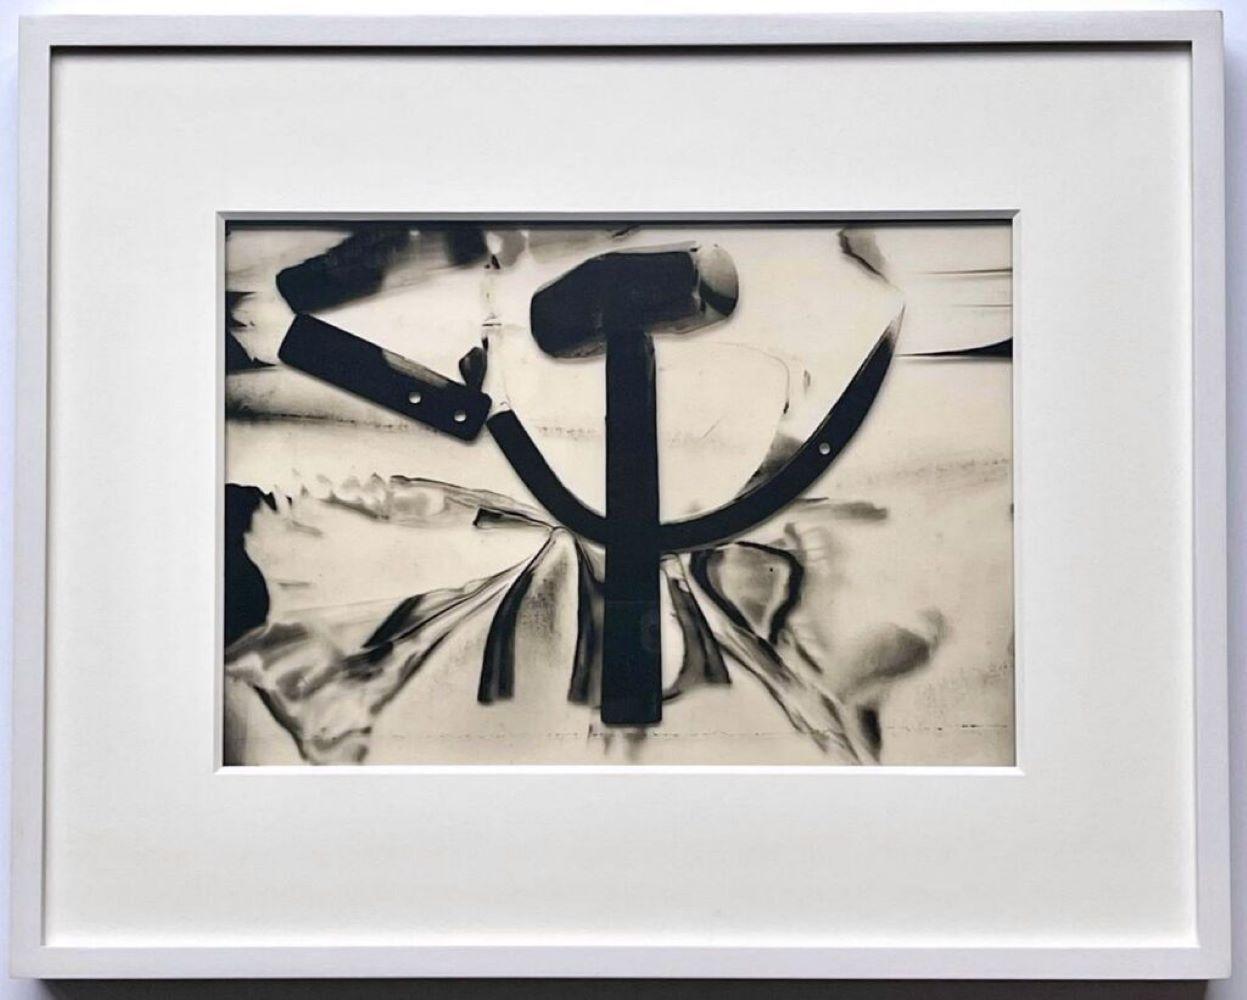 Hammer & Sickle, Acetat eines ikonischen Bildes, verliehen von Warhol an Chromacomp Inc. 